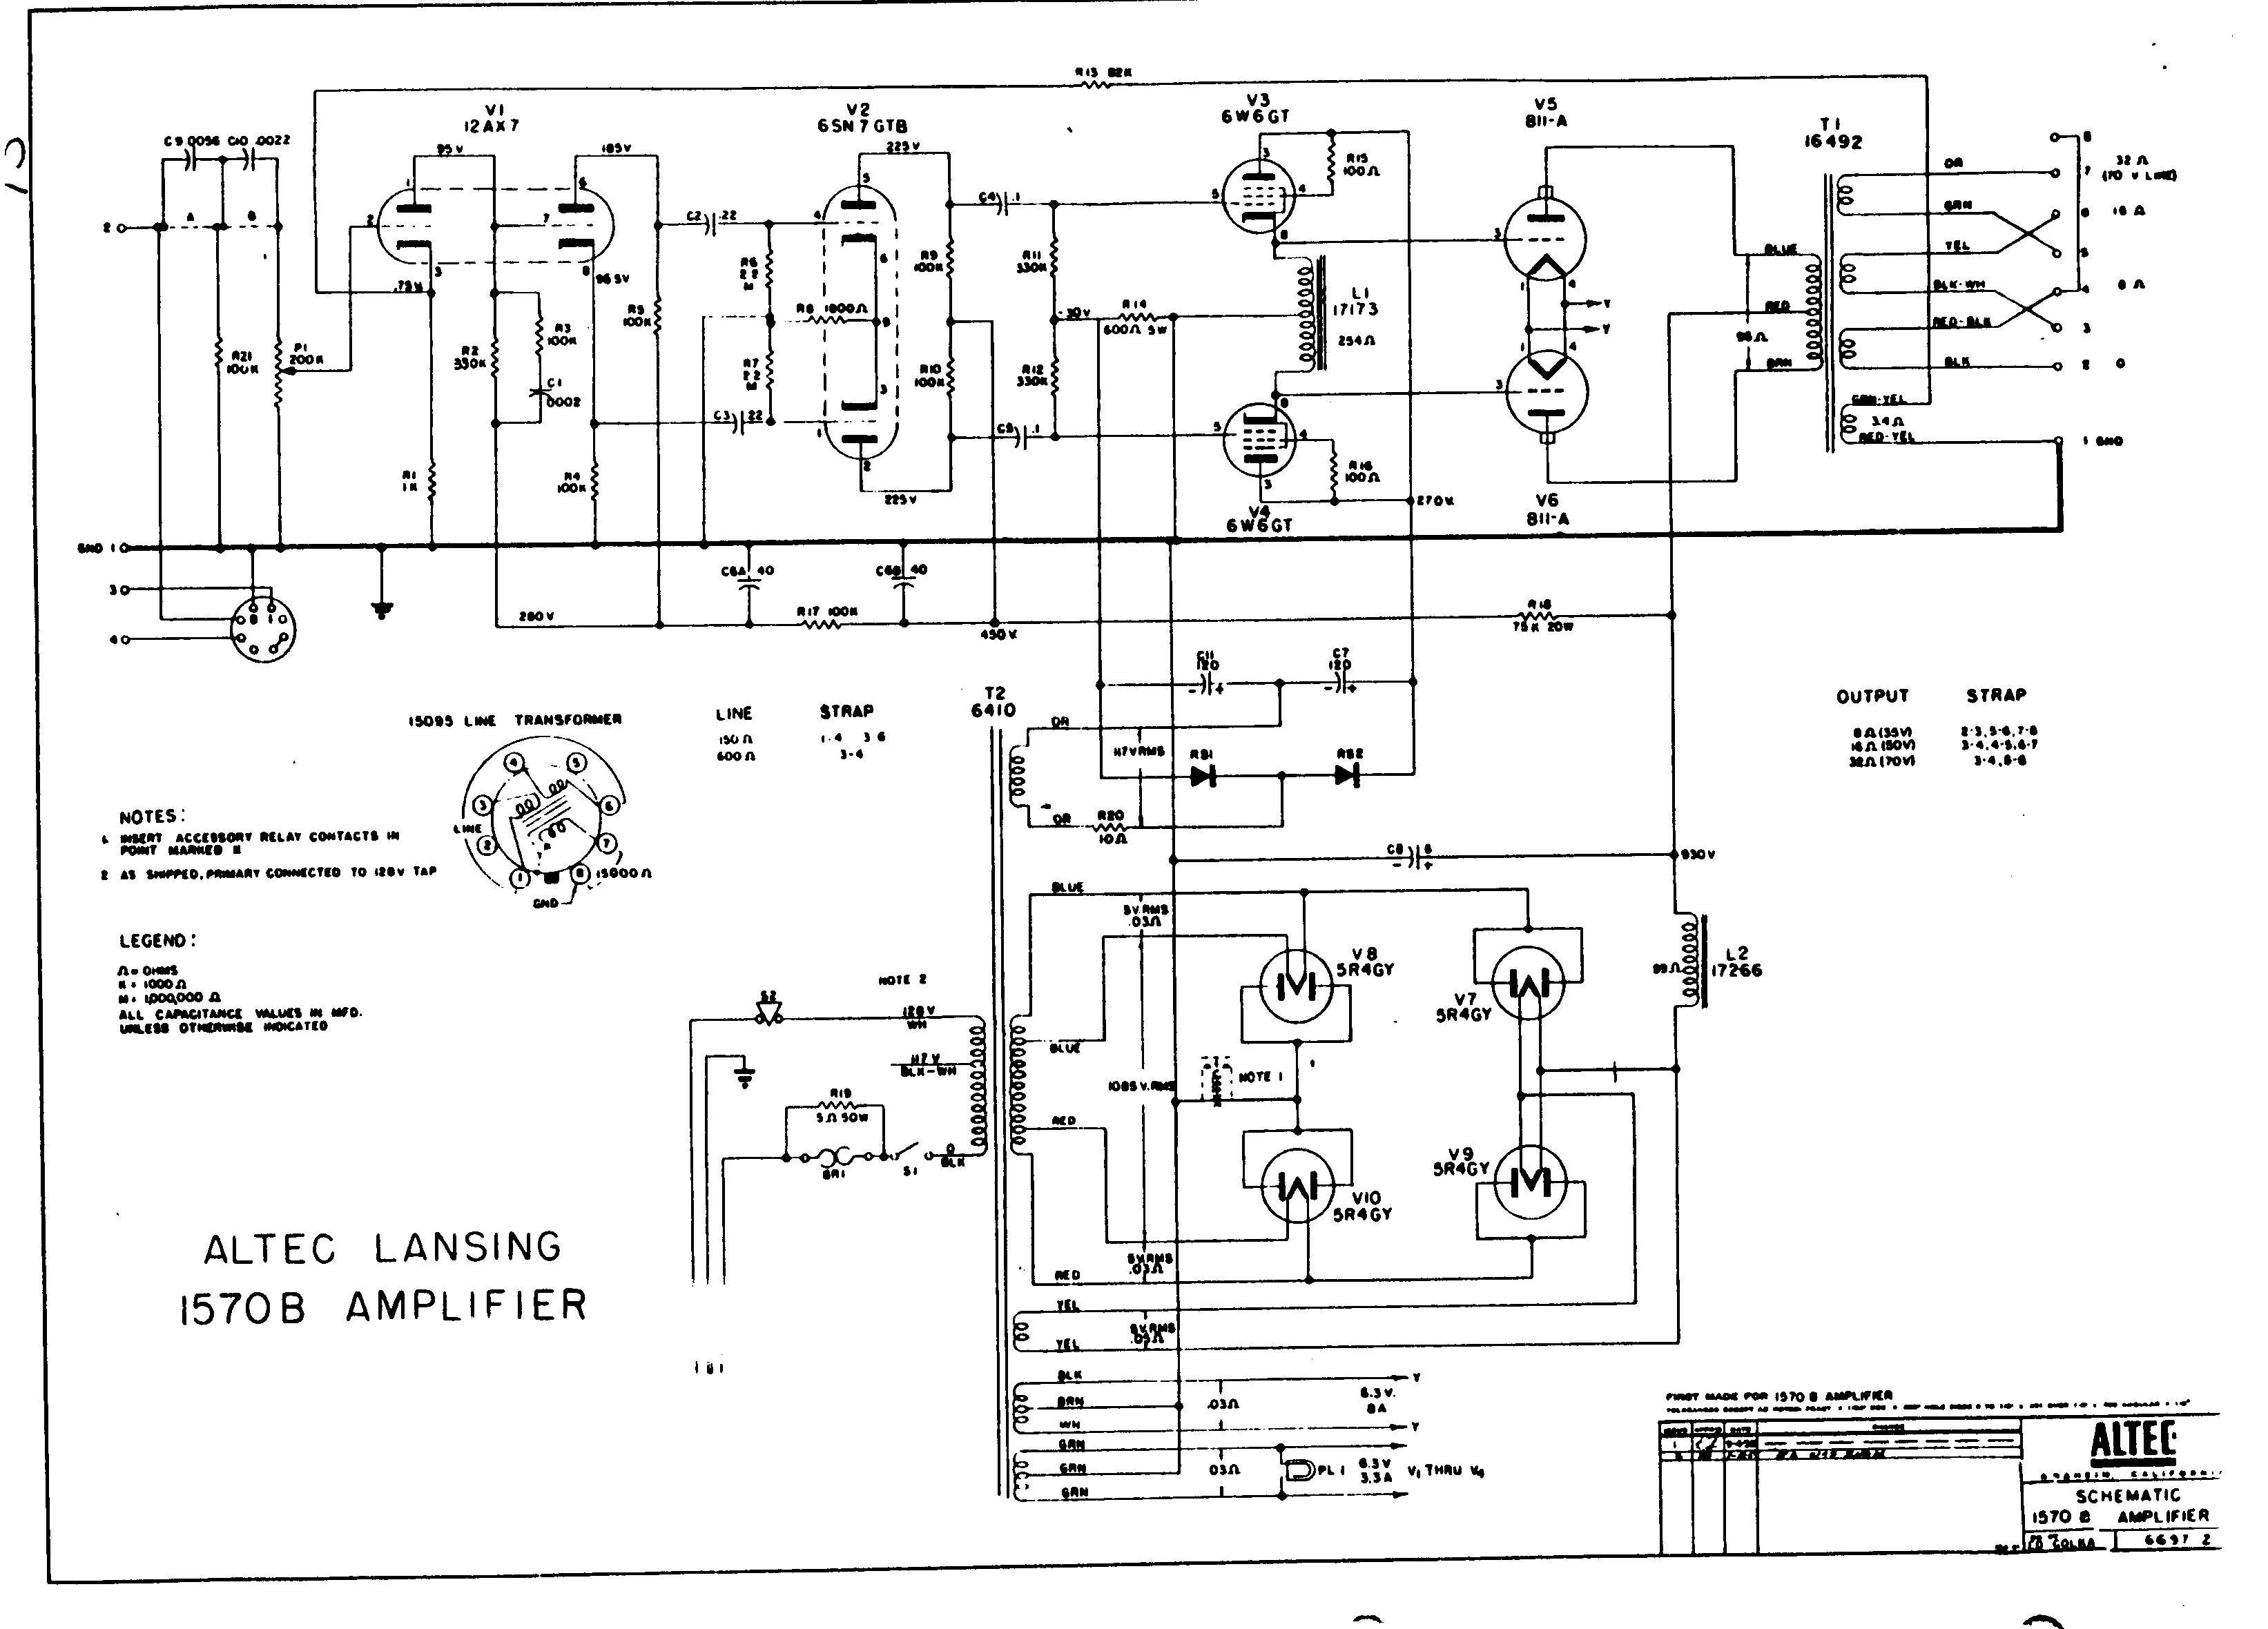 Схема Altec Lansing - 1570B Amplifier